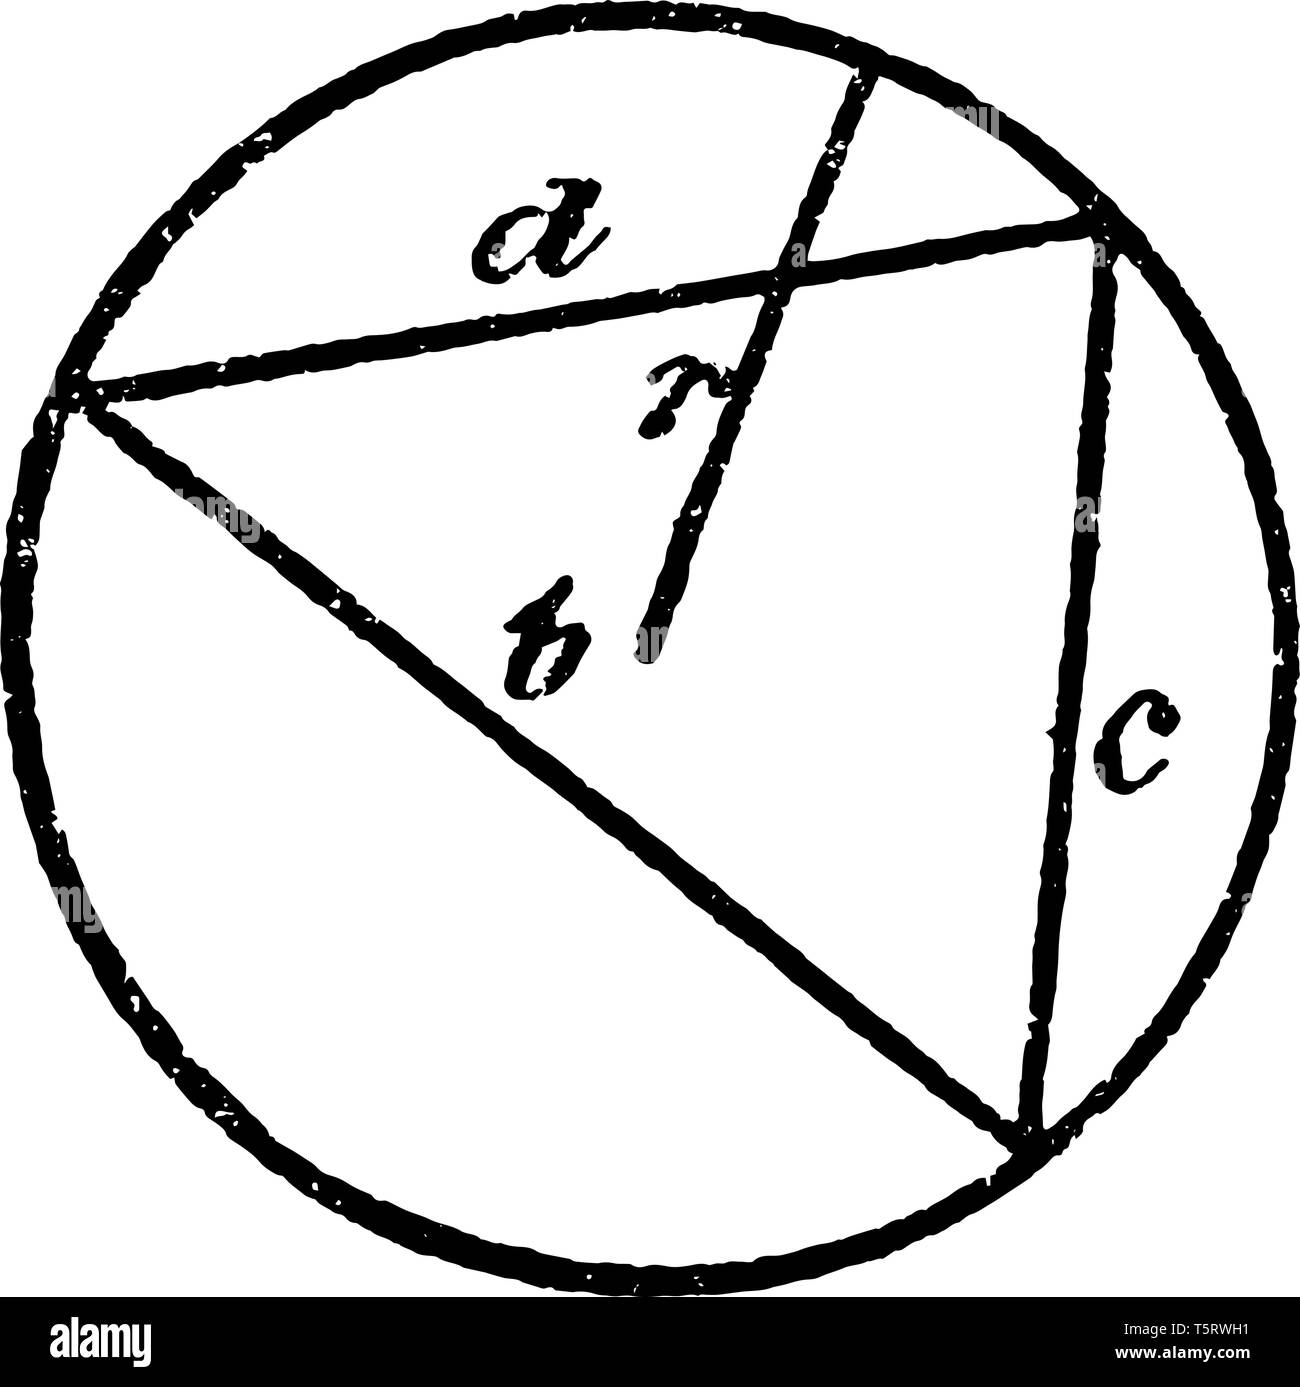 L'image est un triangle équilatéral inscrit dans un cercle, radio vintage  dessin ou gravure illustration Image Vectorielle Stock - Alamy